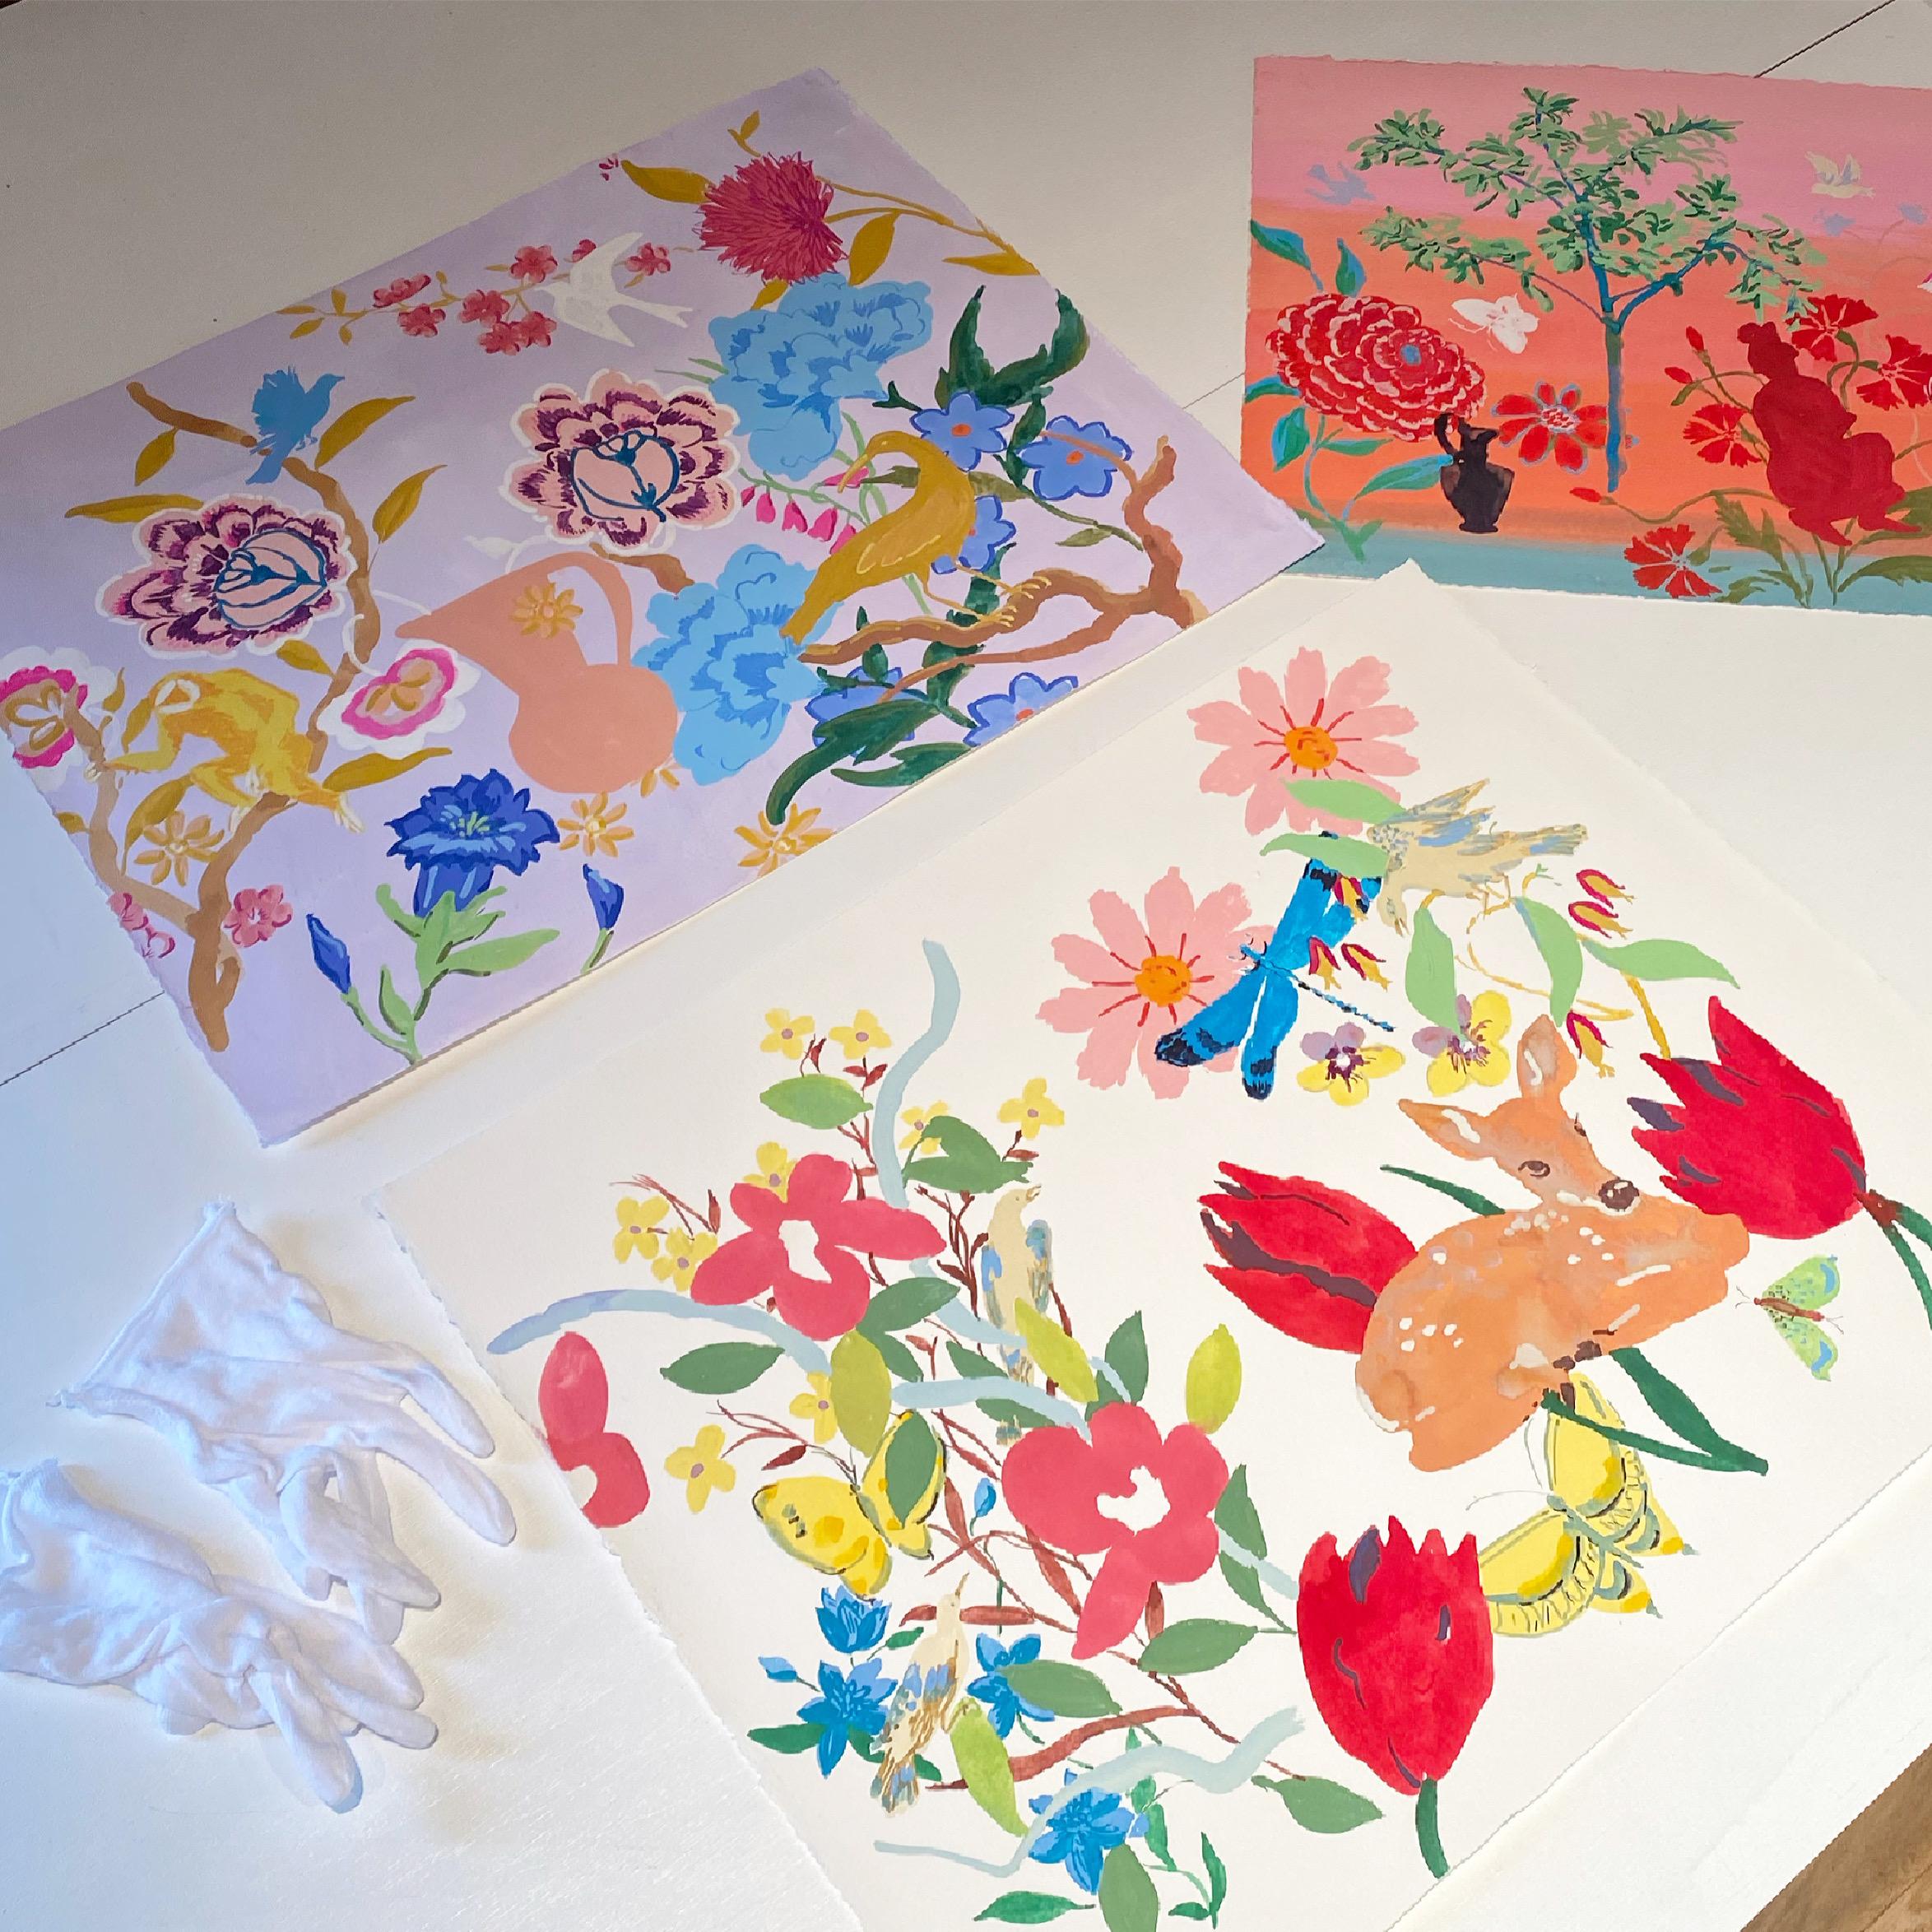 Blau Bernstein, Gelb, Rosa, Botanische Malerei, Blumen, Vögel, Affe, Garten – Painting von Melanie Parke